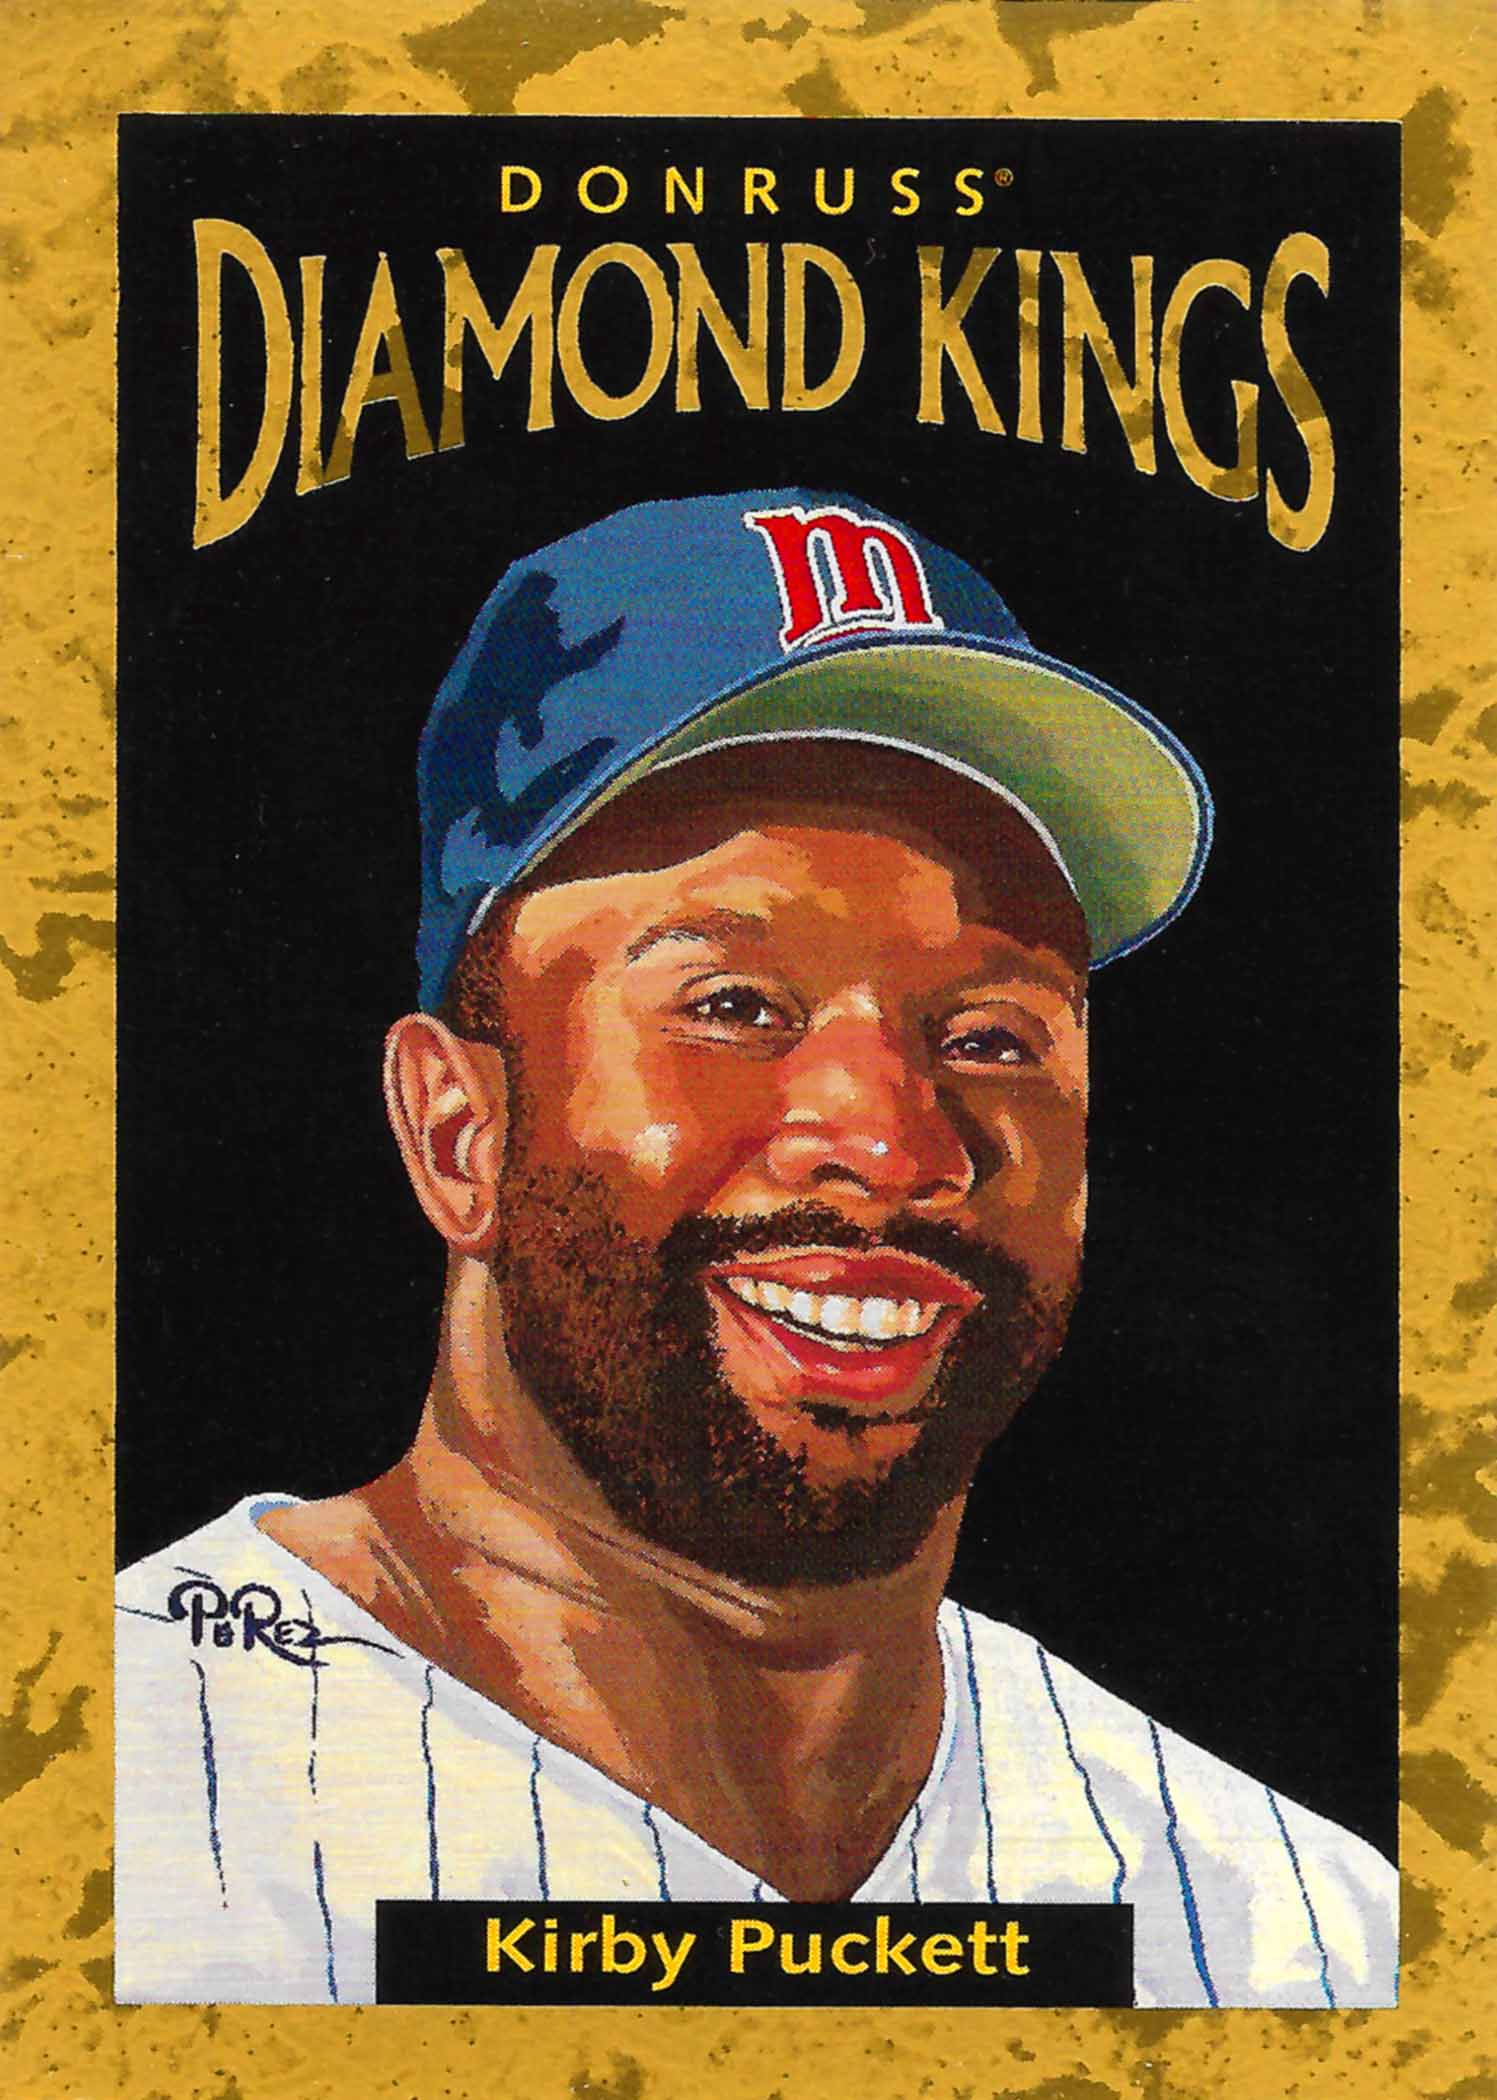 1996 Donruss Diamond Kings